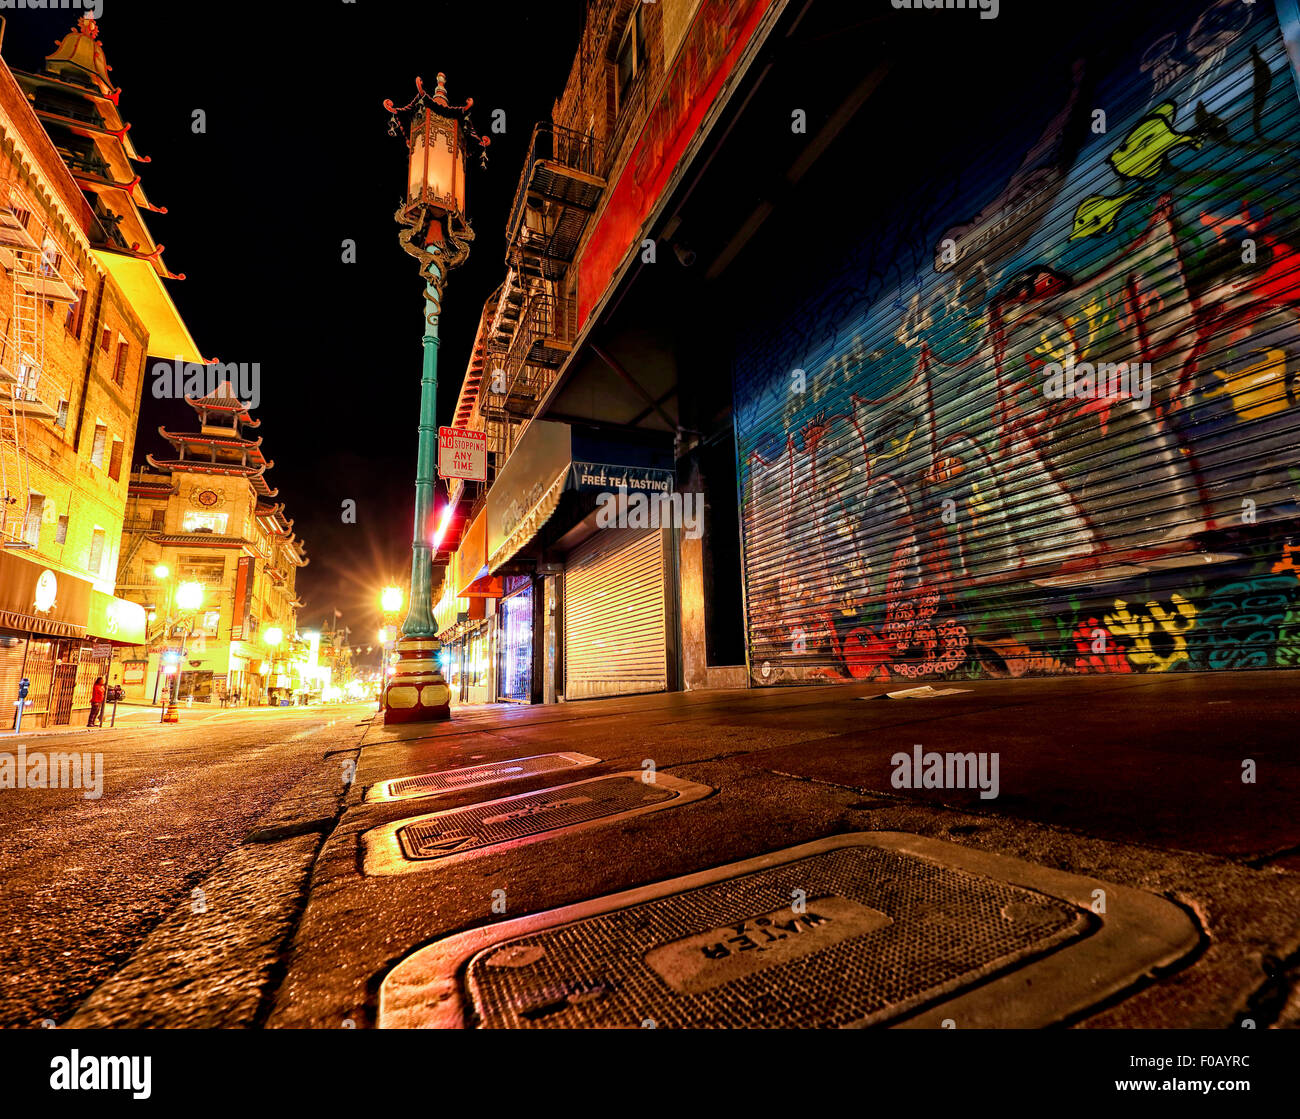 Chinatown in San Francisco taken at night Stock Photo